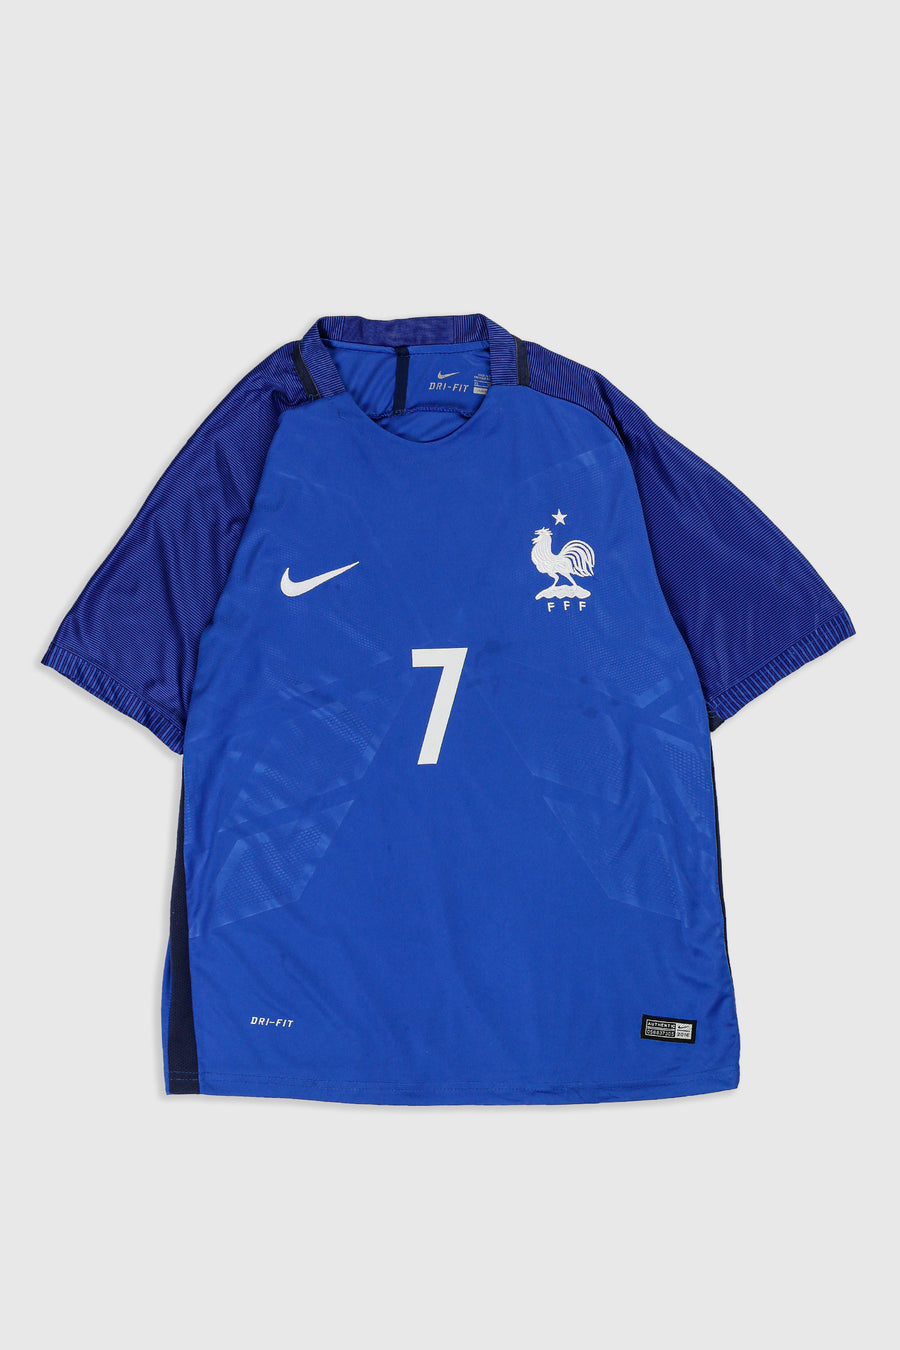 Vintage France Soccer Jersey - XS